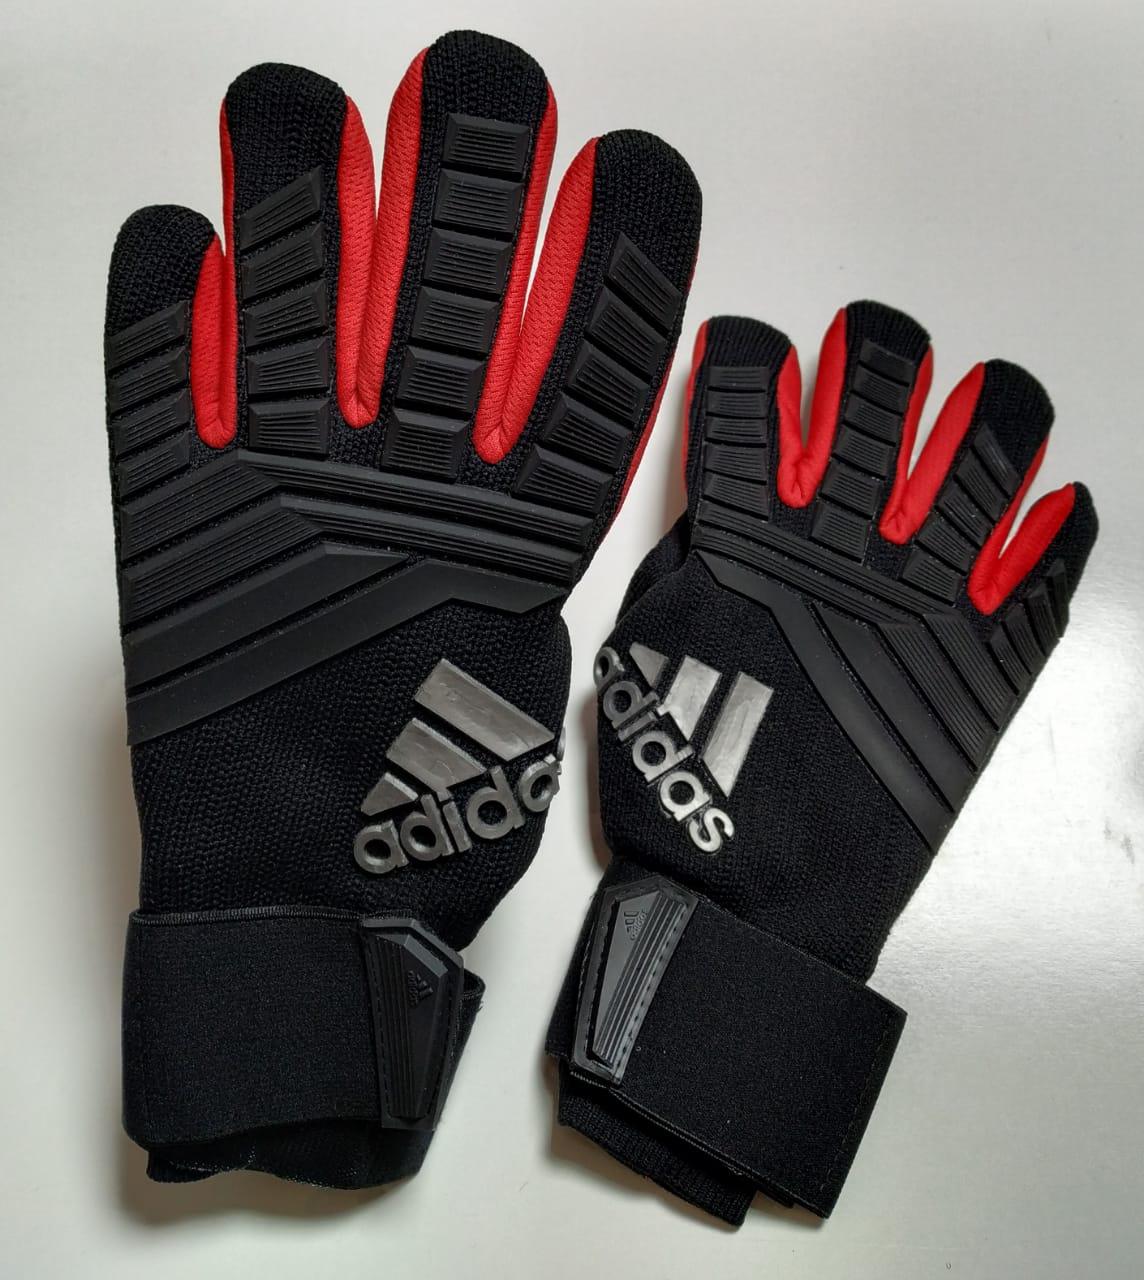 Вратарские перчатки Adidas original 918